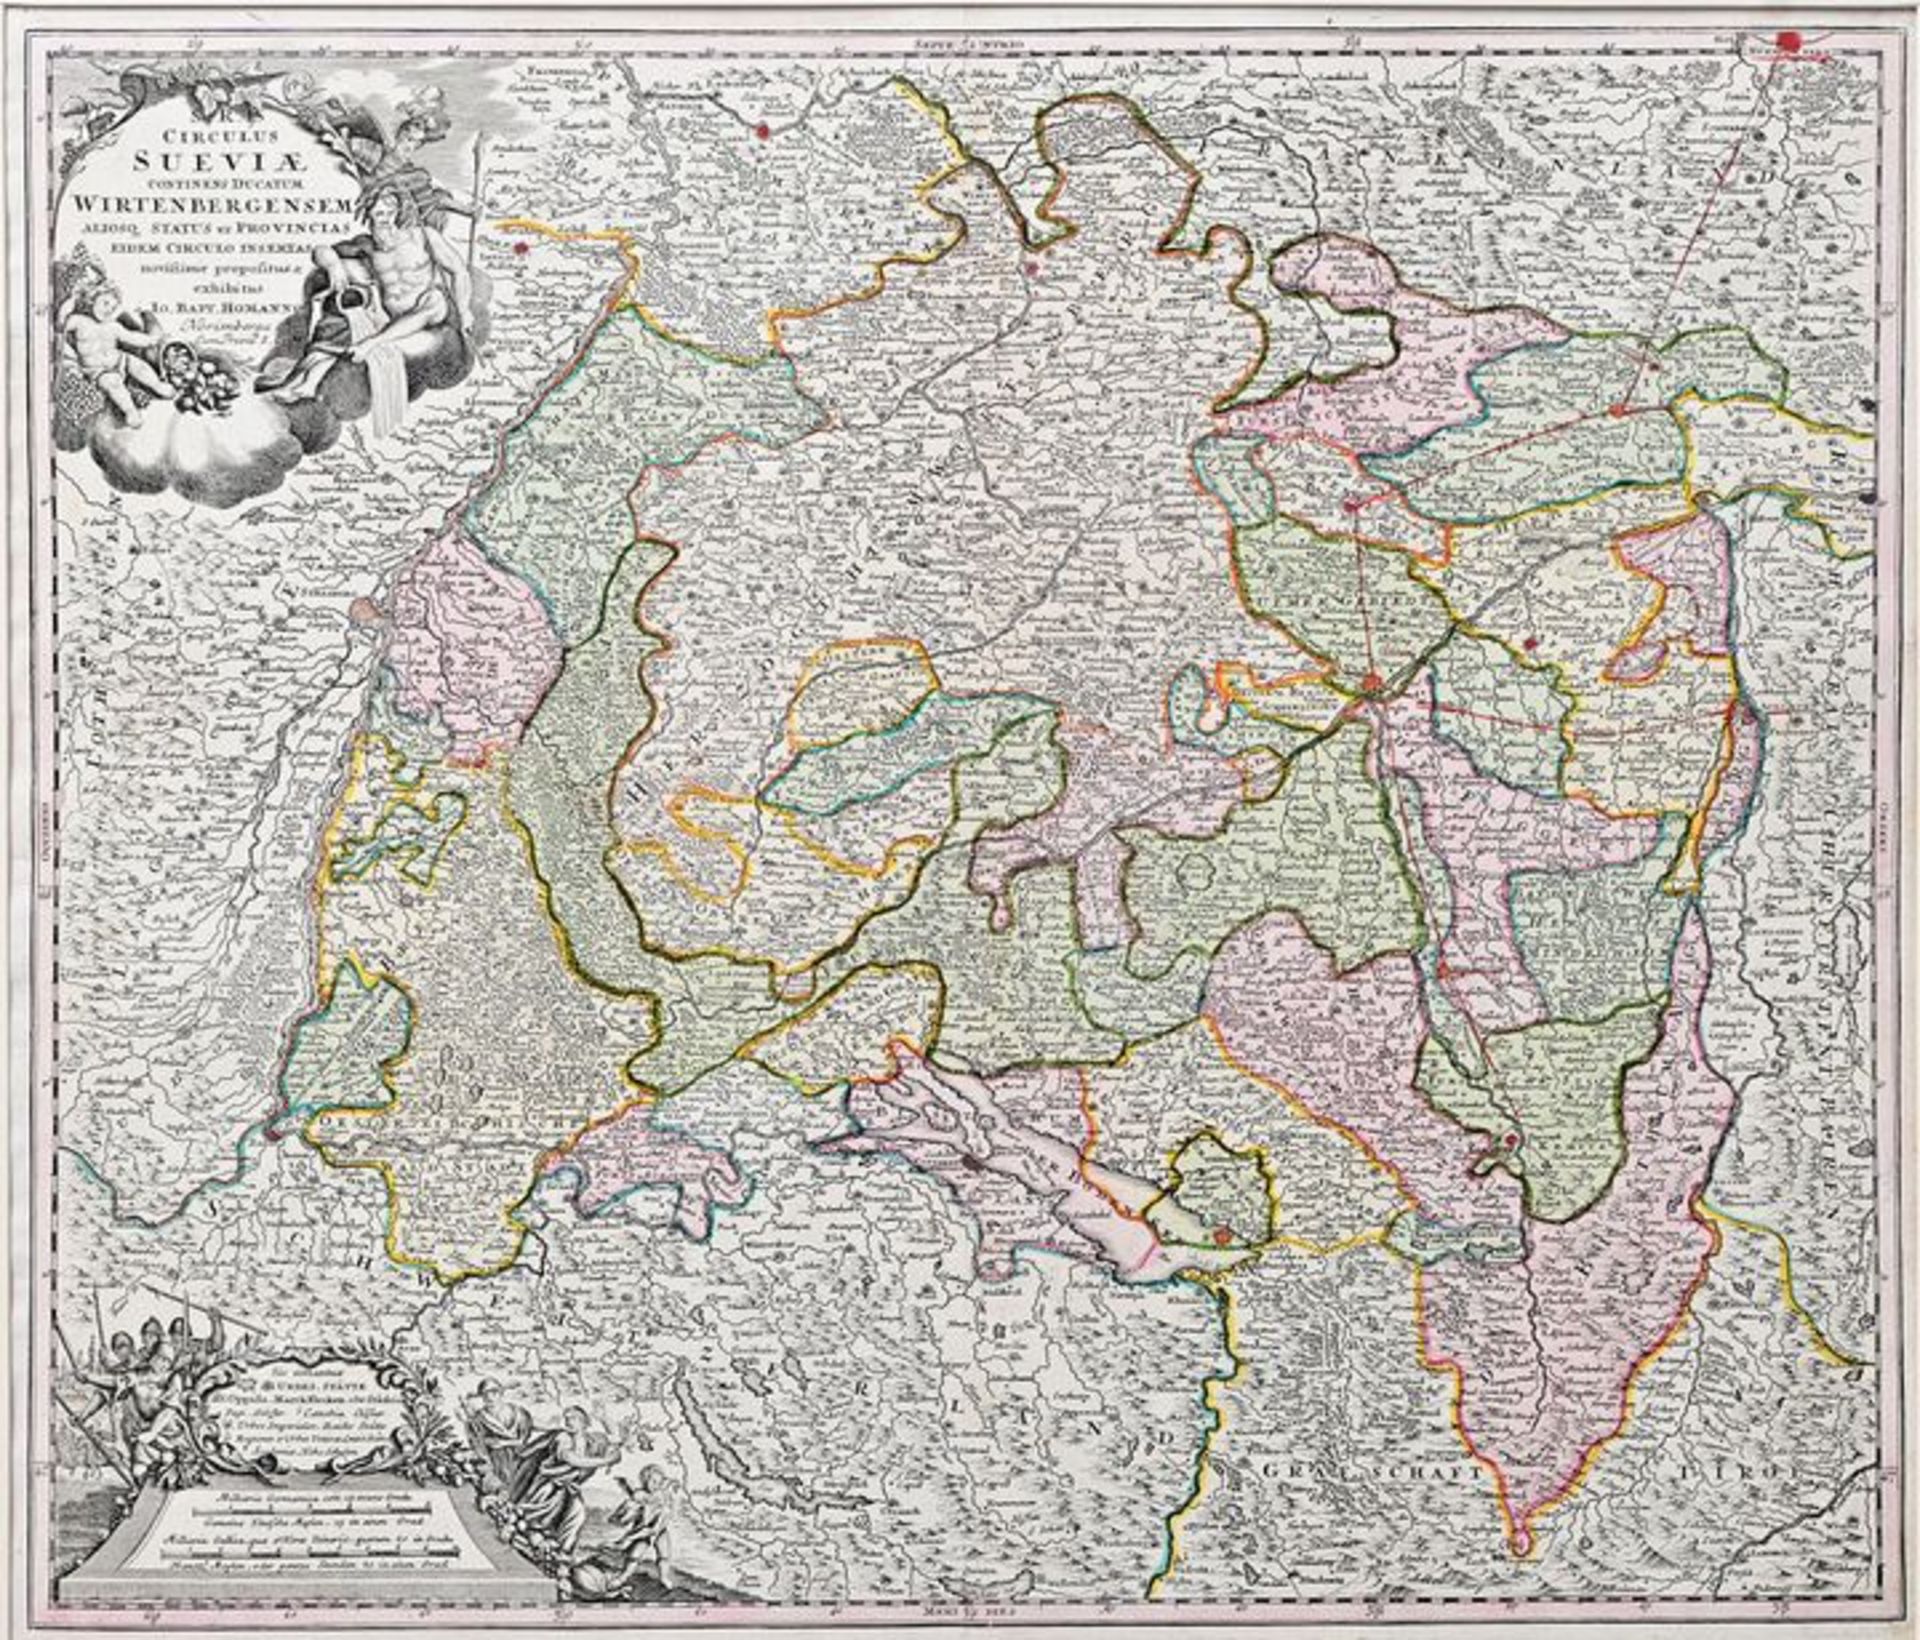 Landkarte, Schwaben / Map of Swabia